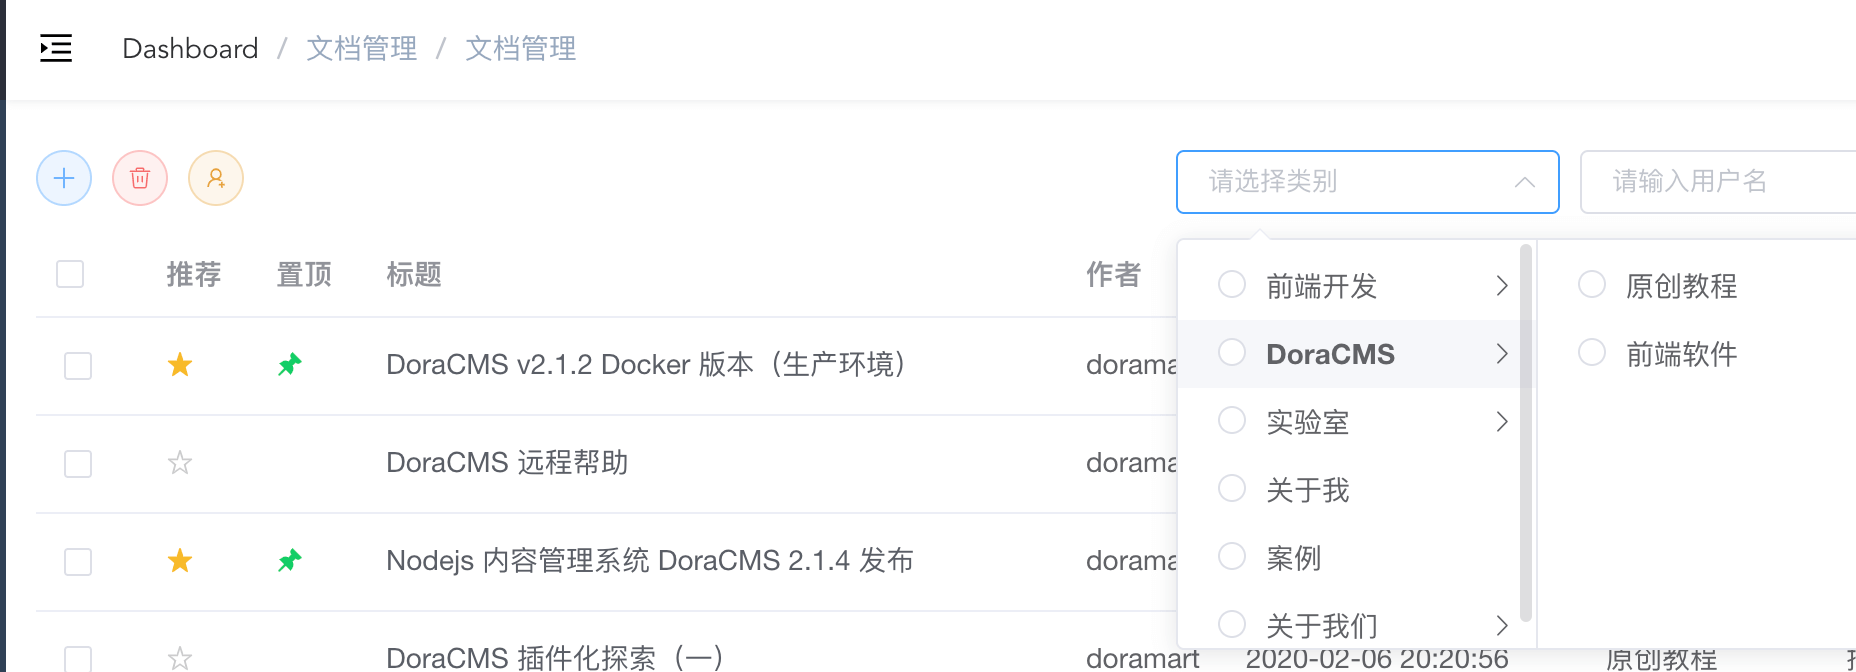 Nodejs 内容管理系统 DoraCMS 2.1.5 发布